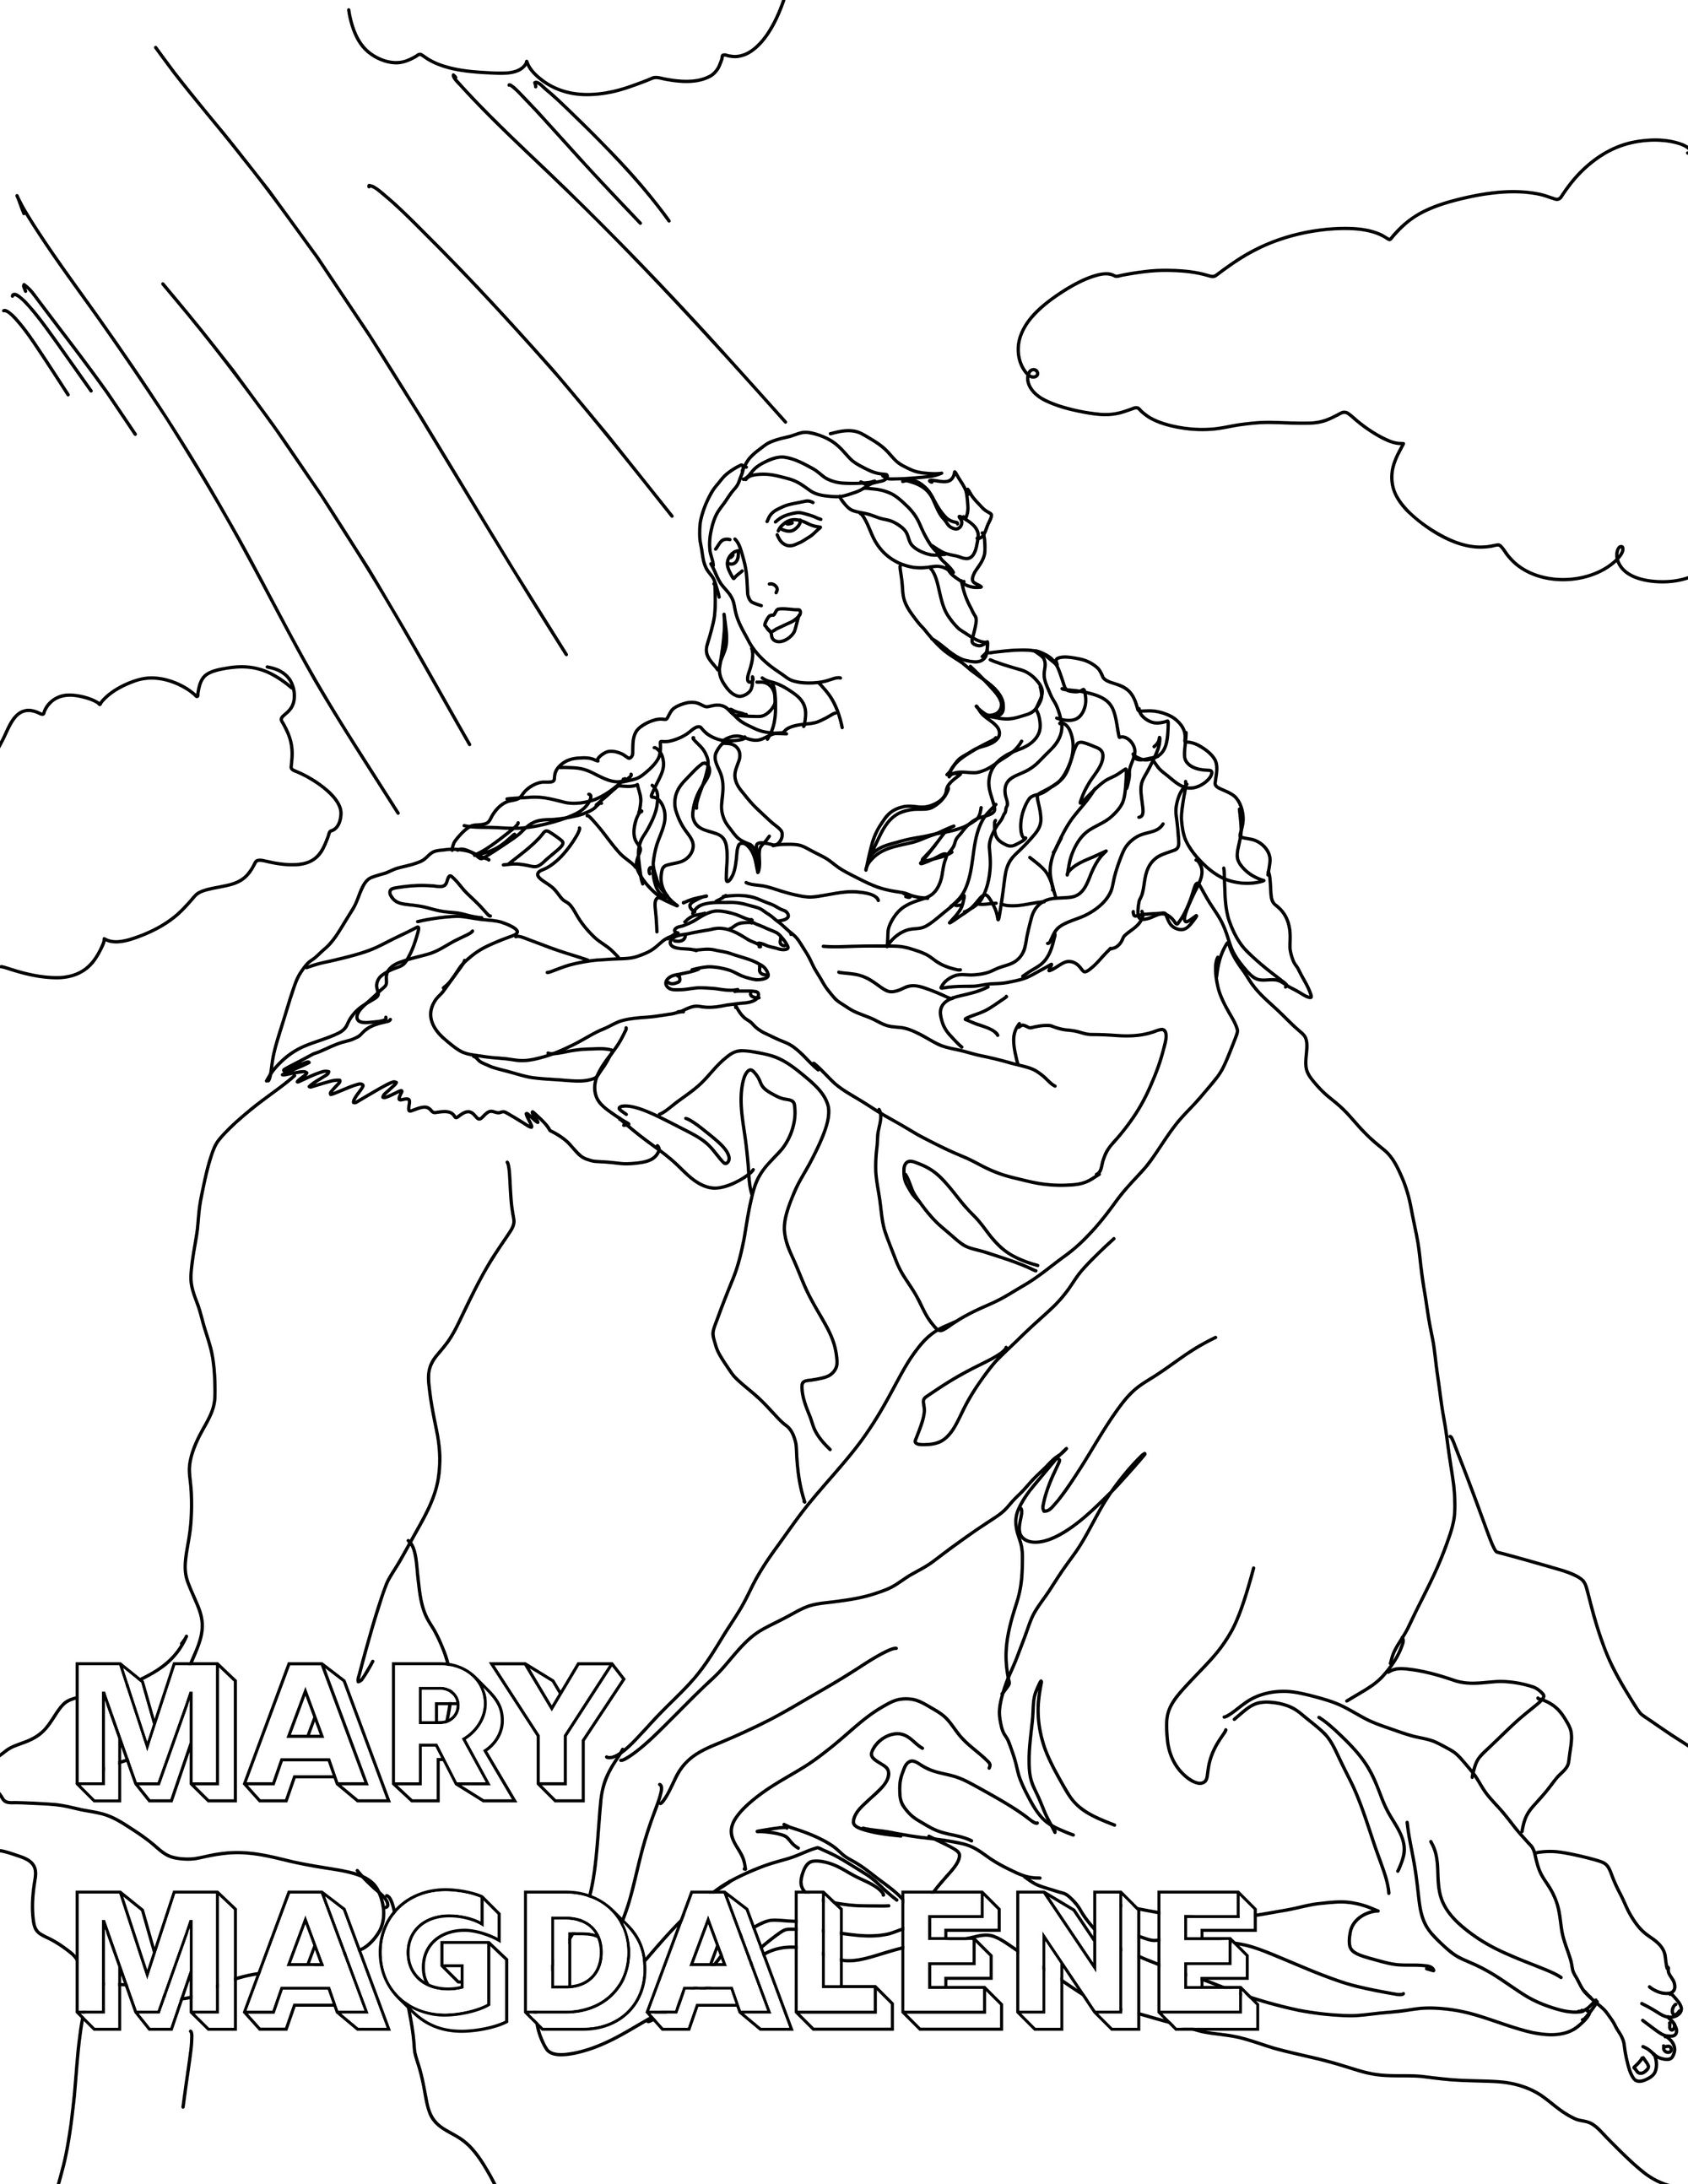 Mary Magdalene Catholic Coloring Page